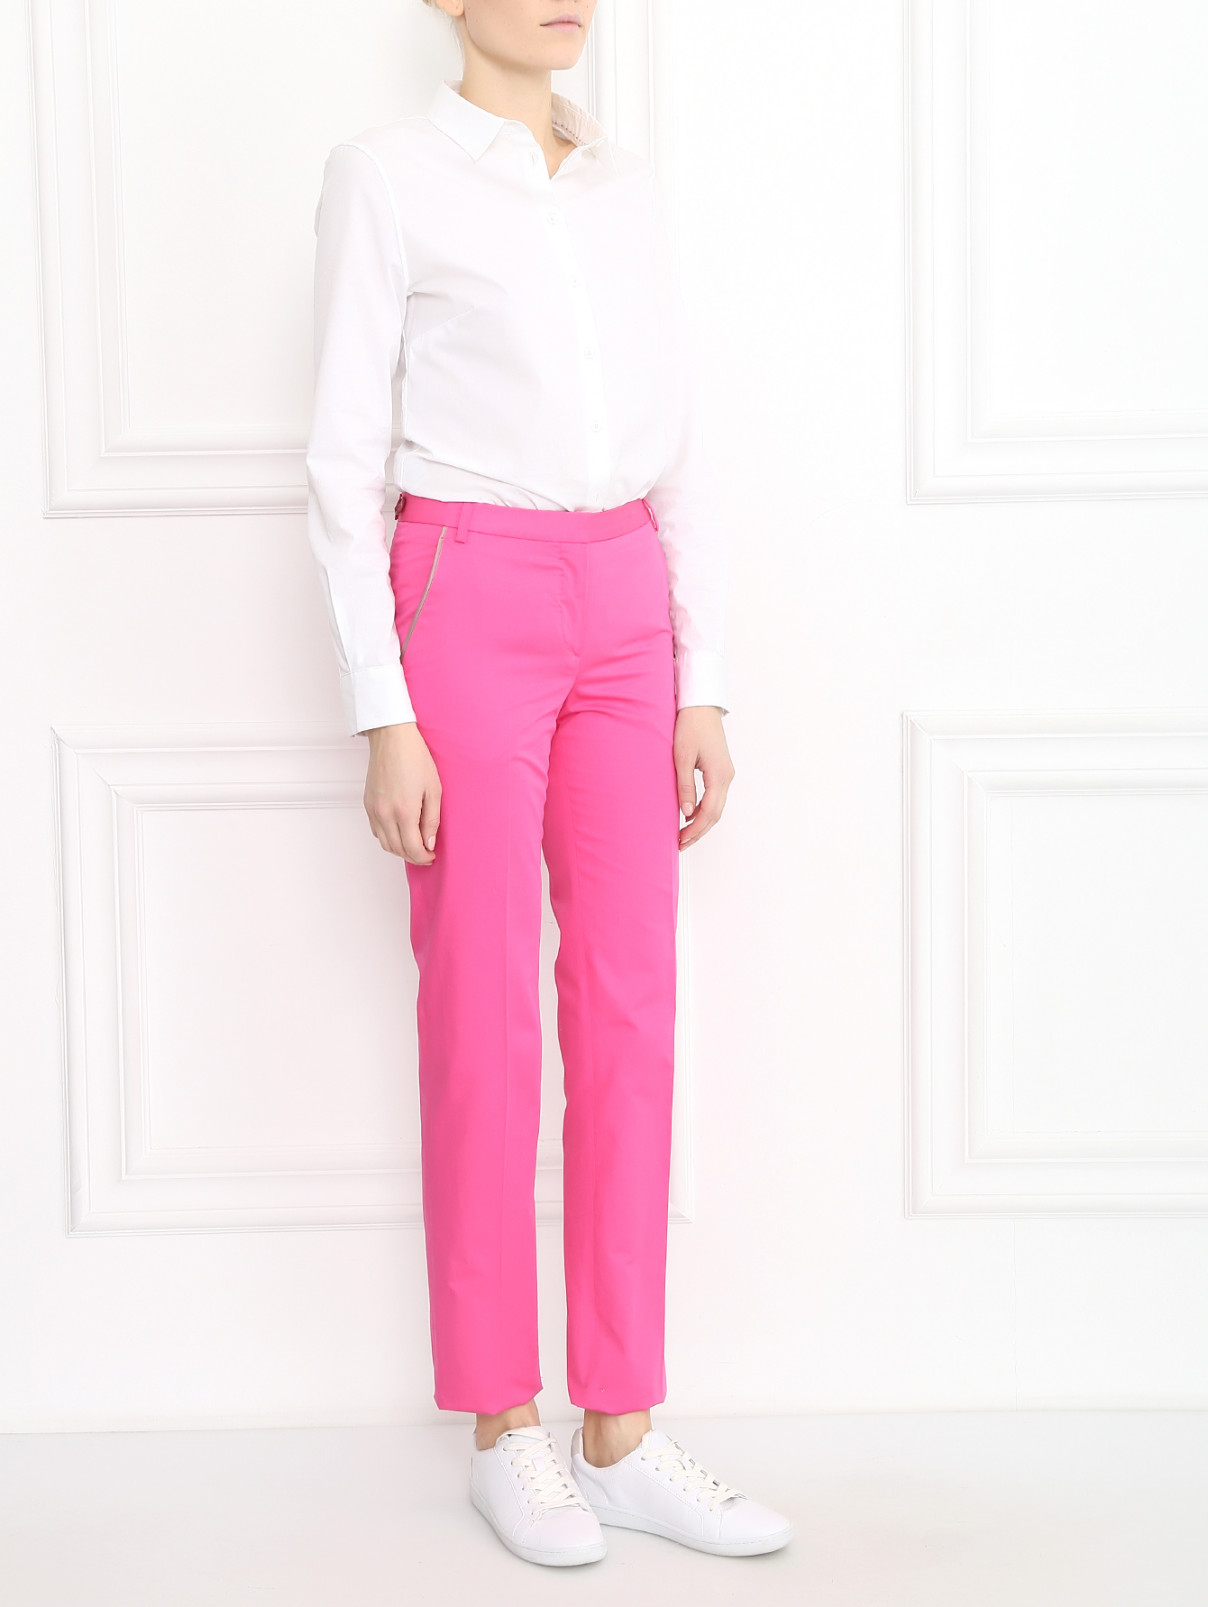 Прямые брюки из хлопка Paul Smith  –  Модель Общий вид  – Цвет:  Розовый